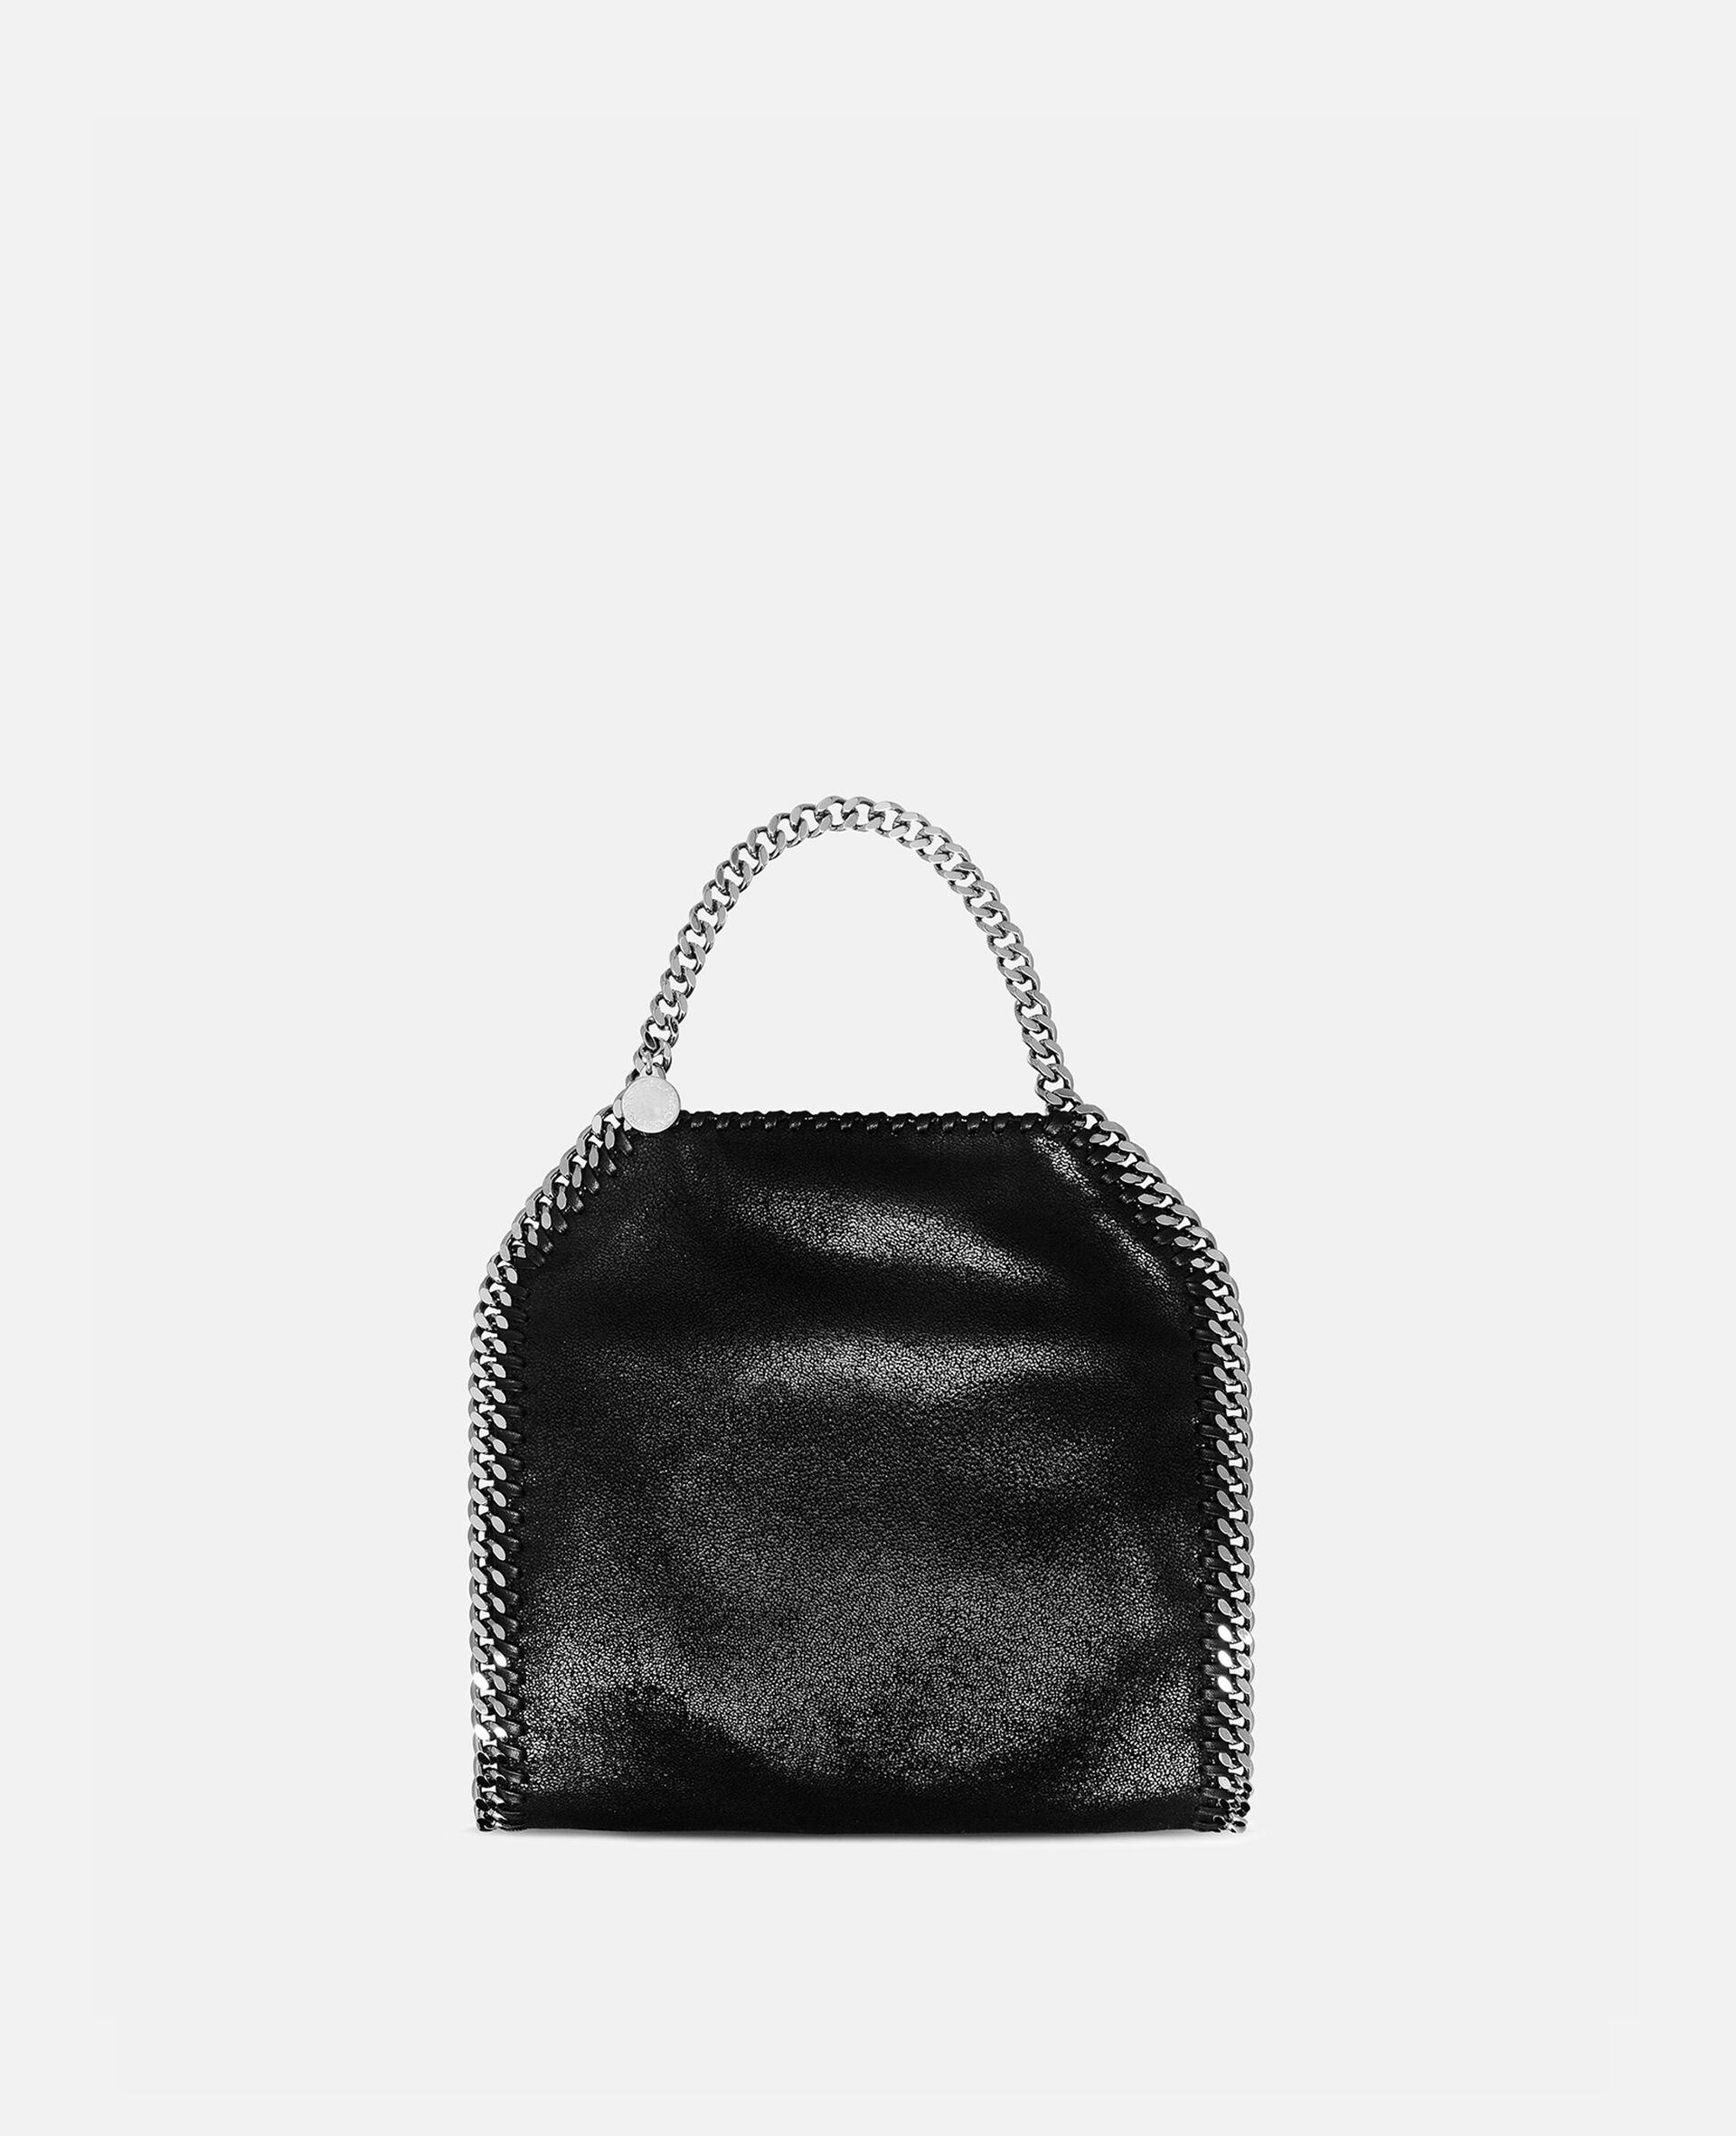 Stella McCartney Black Falabella Crossbody Bag